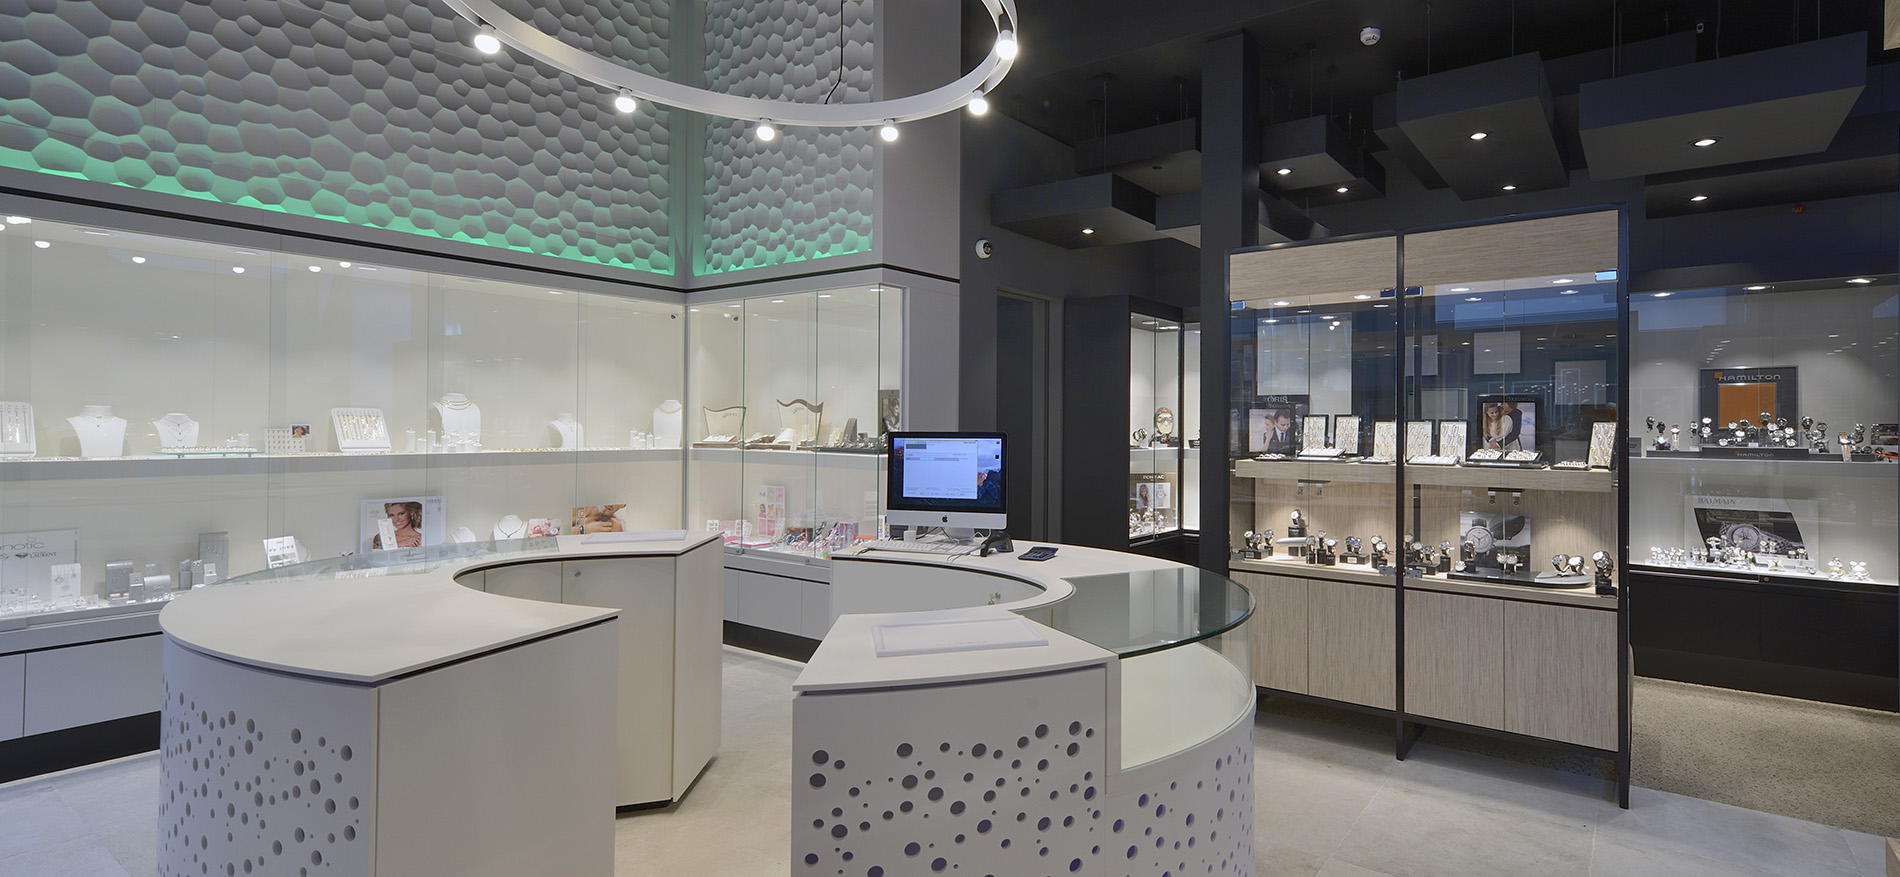 Bijouterie Laurent – Mons (BE): Stijlvolle winkelinrichting juwelier - Juweliers